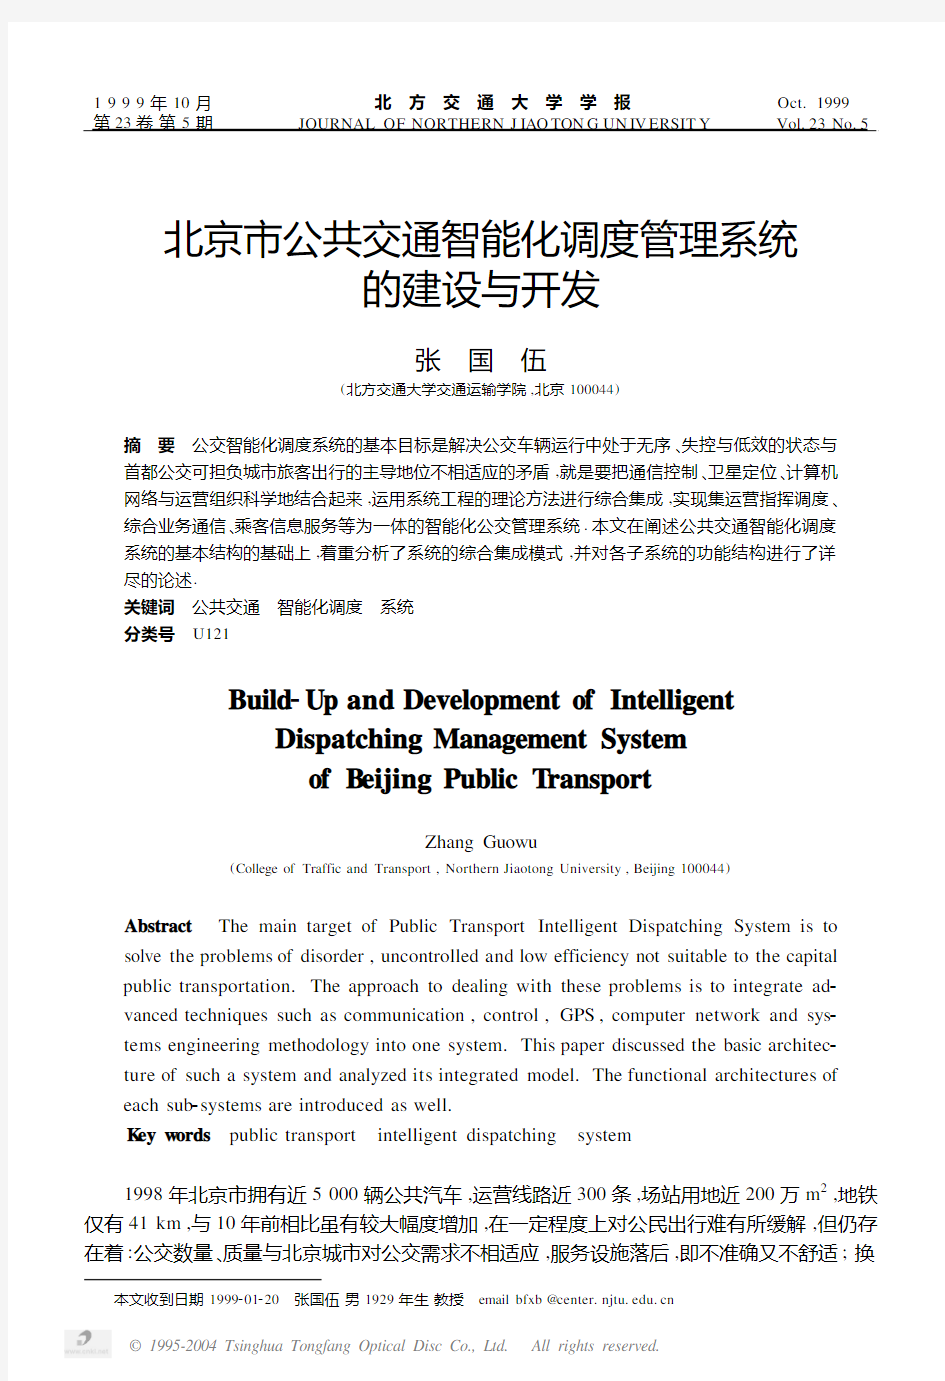 北京市公共交通智能化调度管理系统的建设与开发